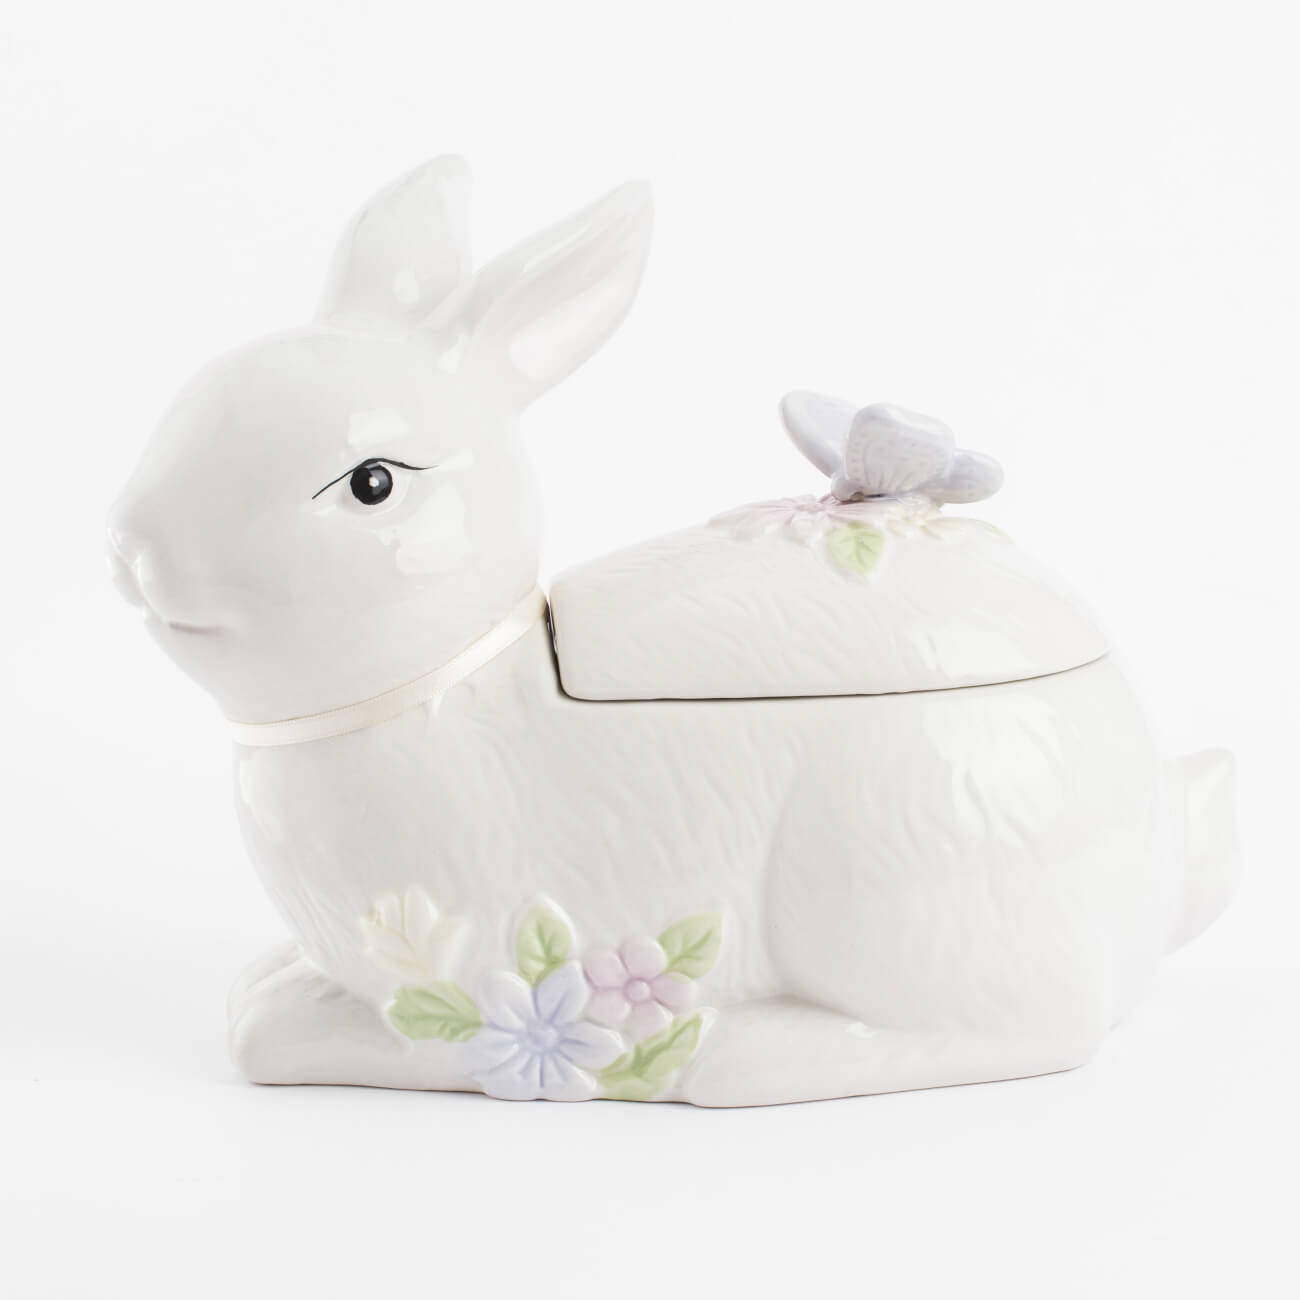 емкость для хранения 12х20 см 500 мл керамика кролик с букетом ов pure easter Емкость для хранения, 25х19 см, 1,1 л, керамика, белая, Кролик с бабочкой, Easter